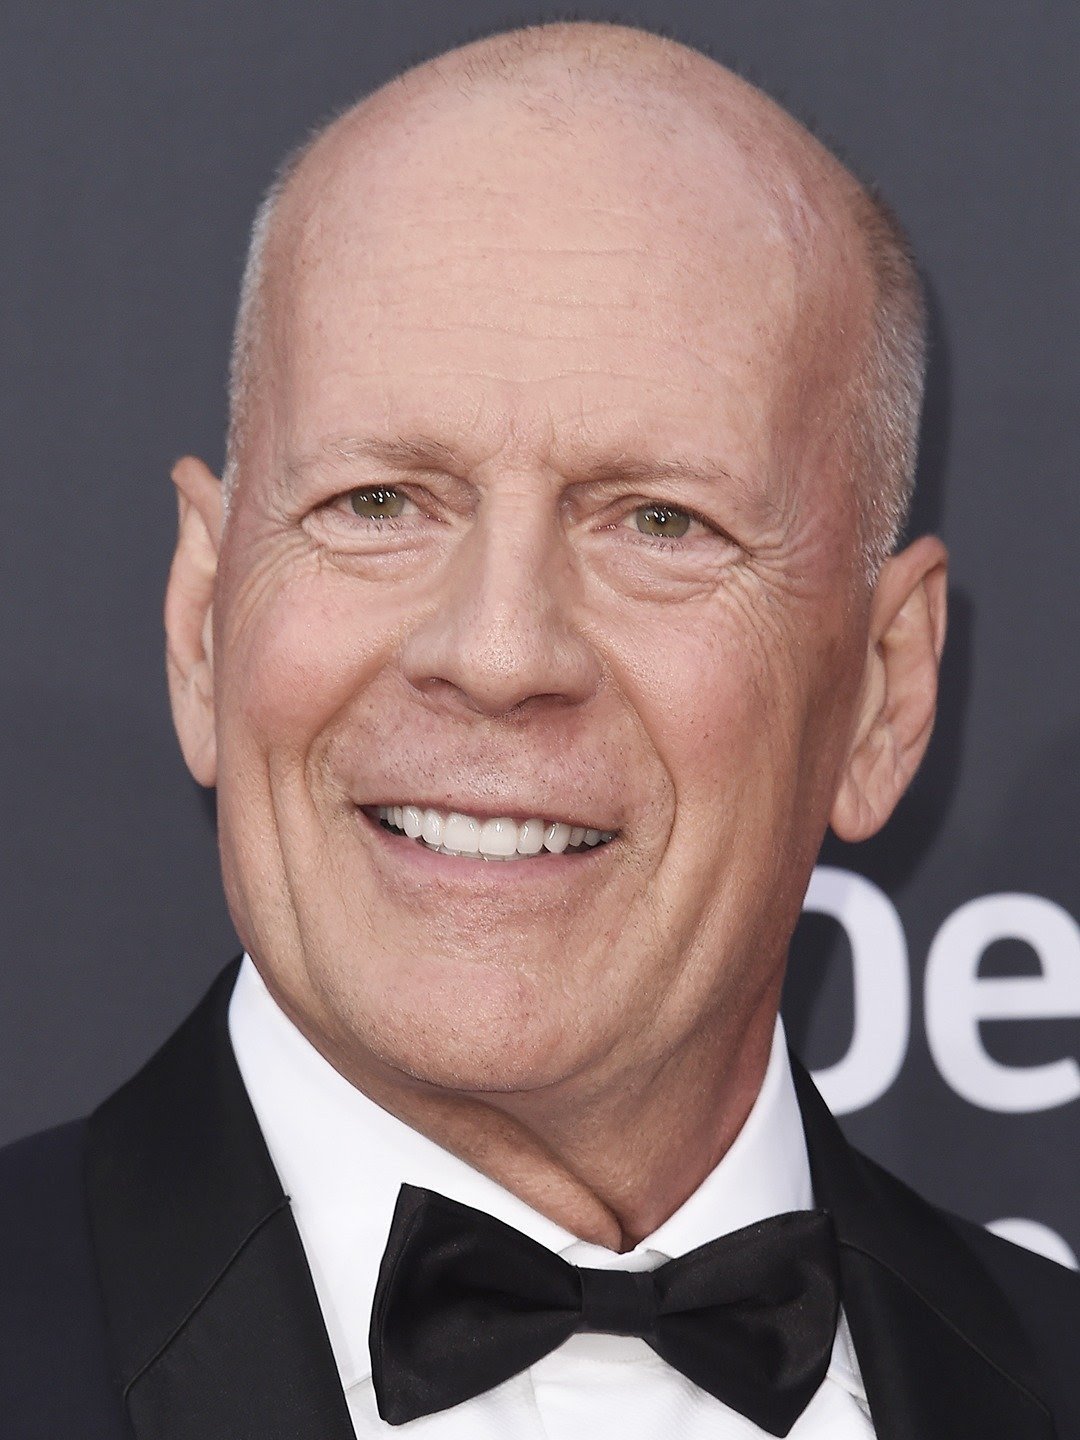 Bruce Willis se aposenta da atuação após diagnóstico de afasia, diz família